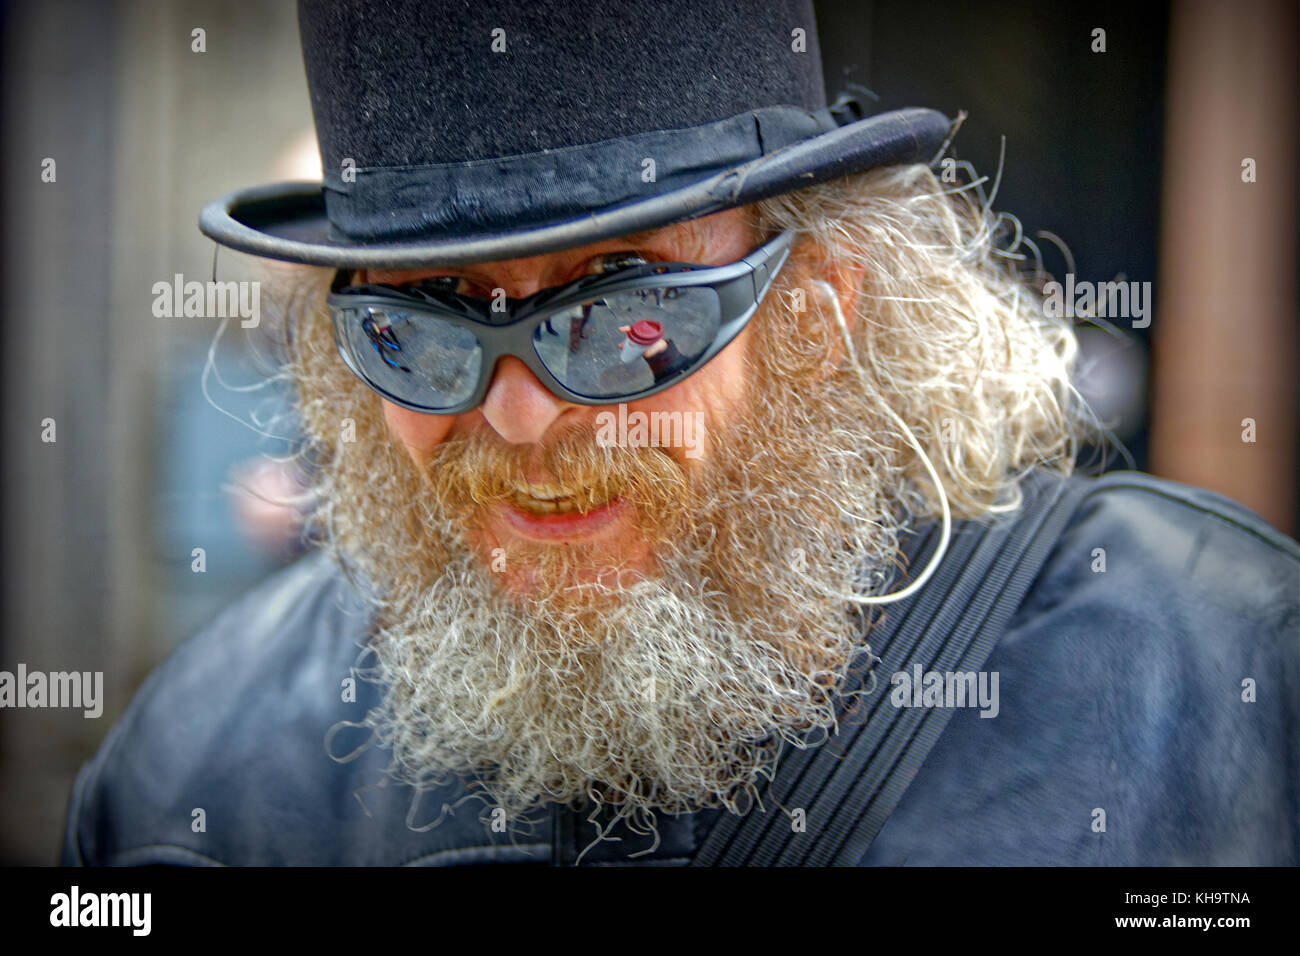 Lokale Künstler frankie Patrick robertson Charakter auf der Straße Melone Trenchcoat Sonnenbrillen bärtigen glücklicher Mann Wired for Sound Stockfoto